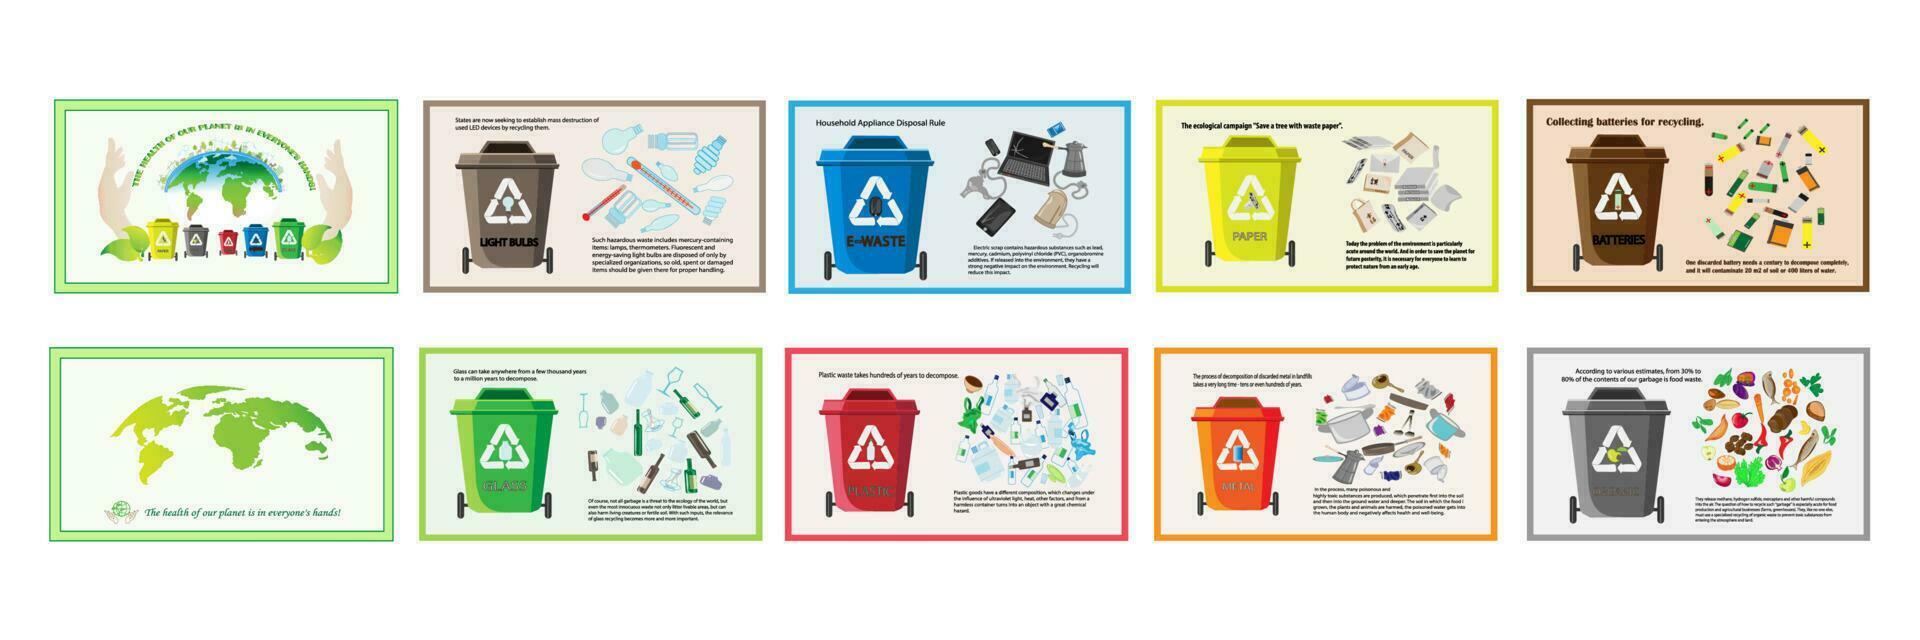 Abfall Recycling. Sammlung mit Typen von recycelbar umweltfreundlich Umgebung Vektor Illustration.